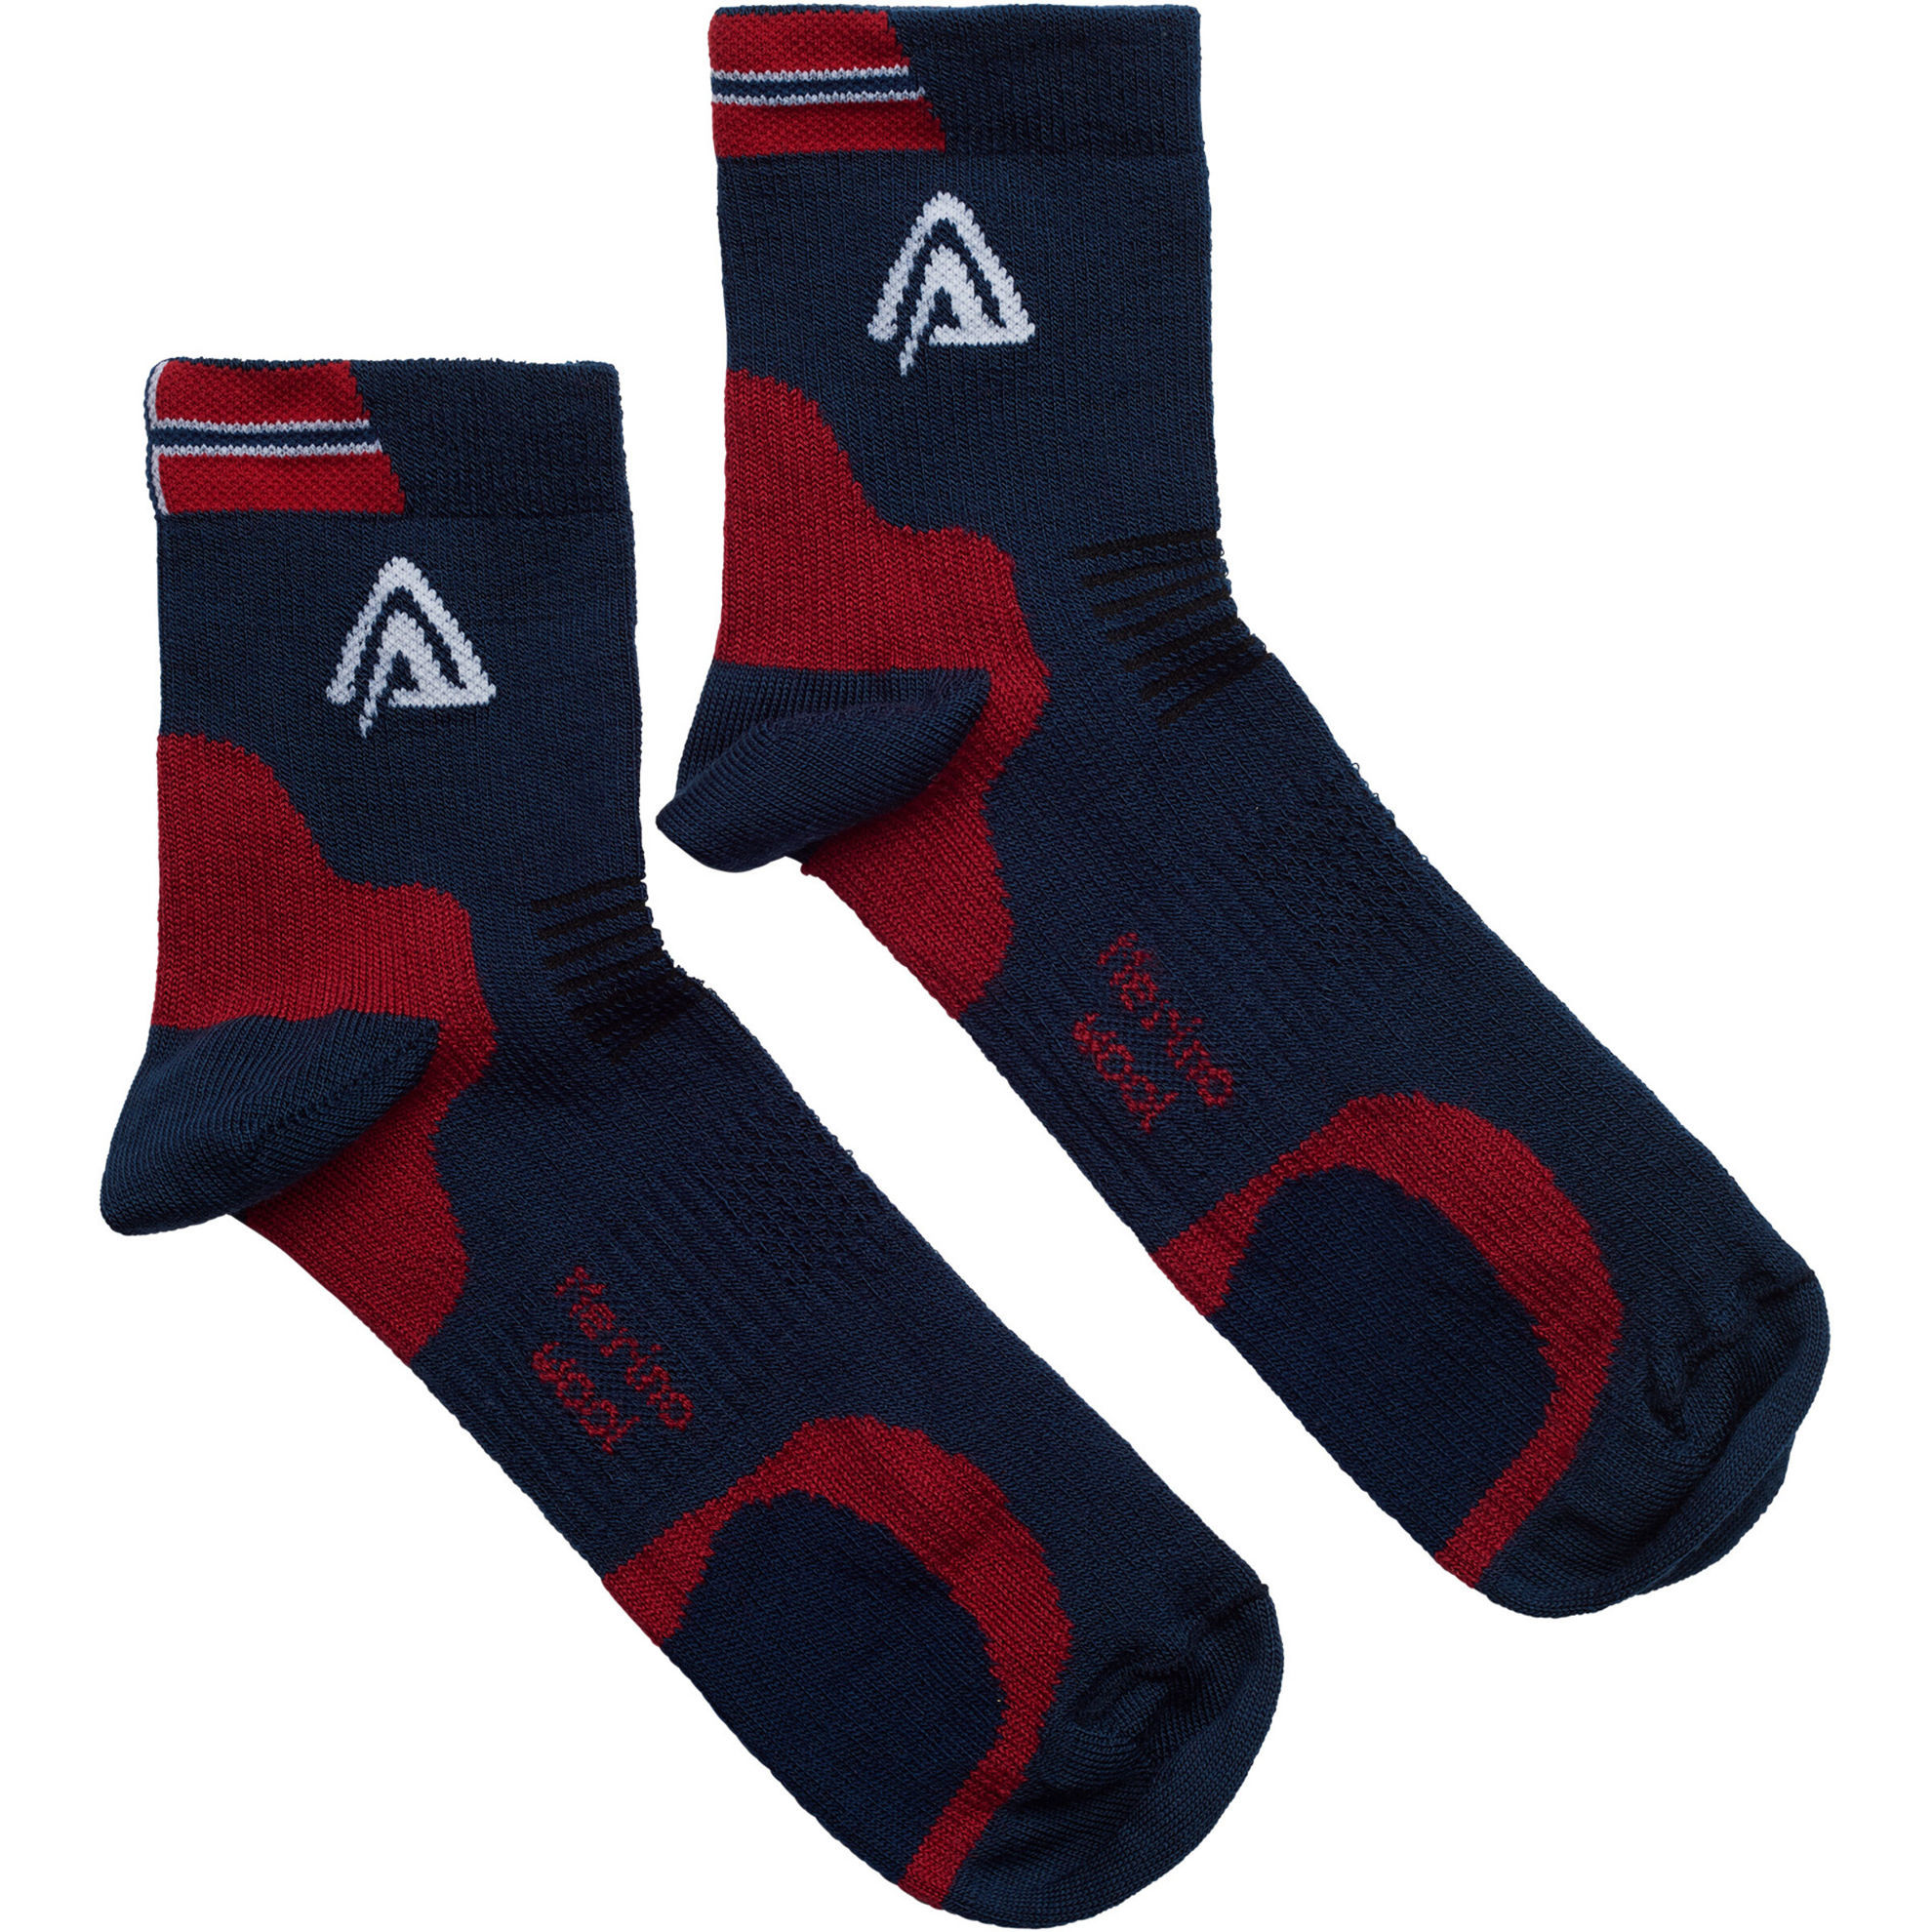 Aclima Running Socks 2 PK i Merinoull - Blue/ Red/ White